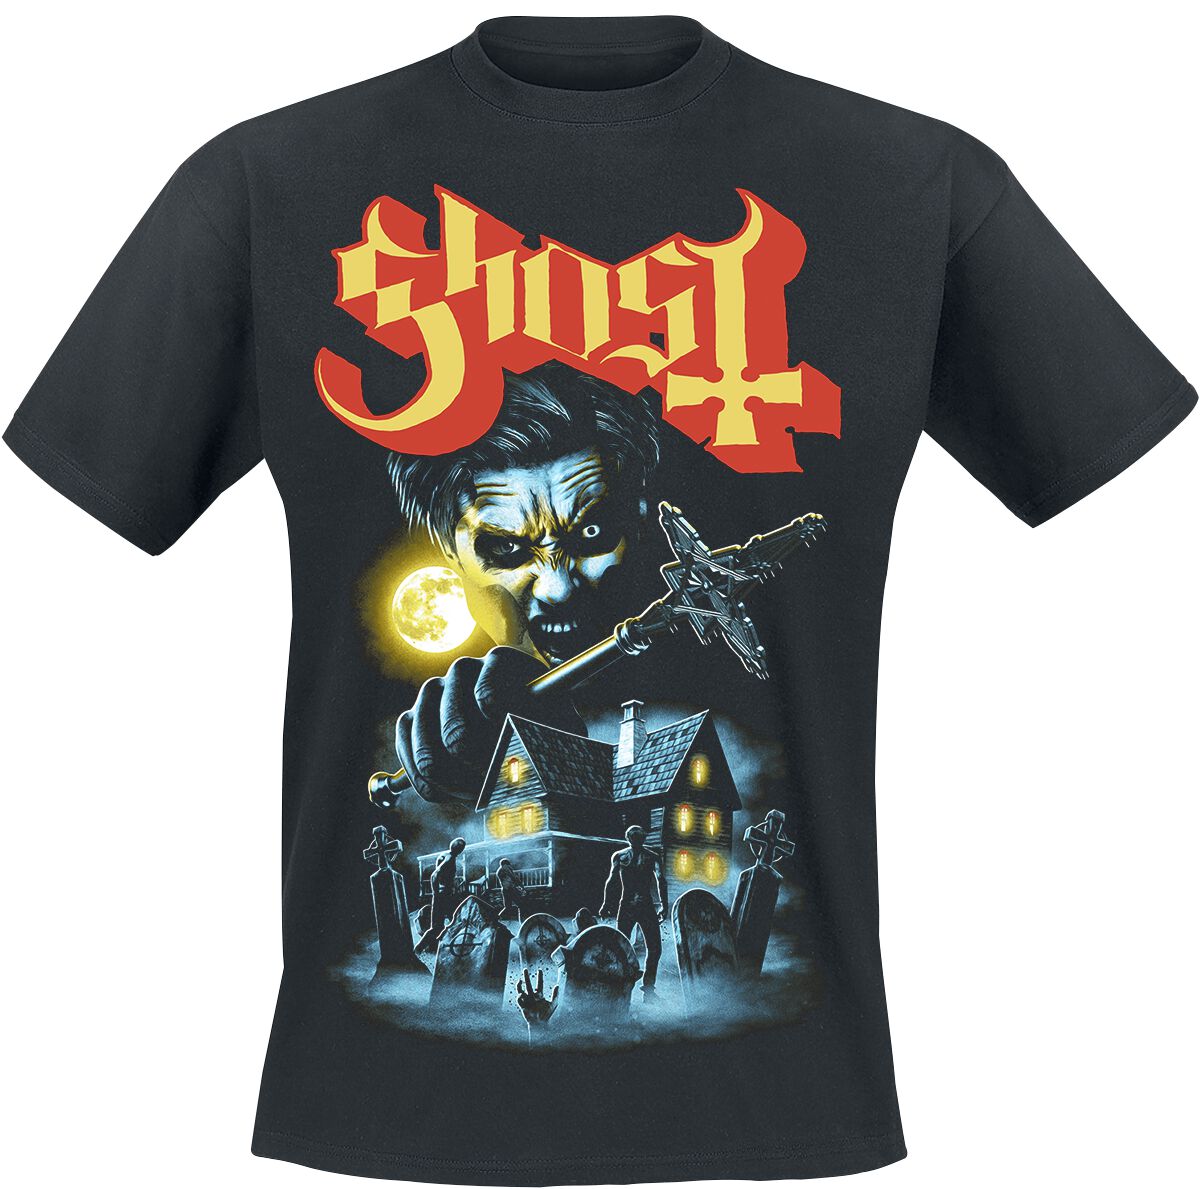 Ghost T-Shirt - By The Cemetery - S bis 4XL - für Männer - Größe XXL - schwarz  - Lizenziertes Merchandise!